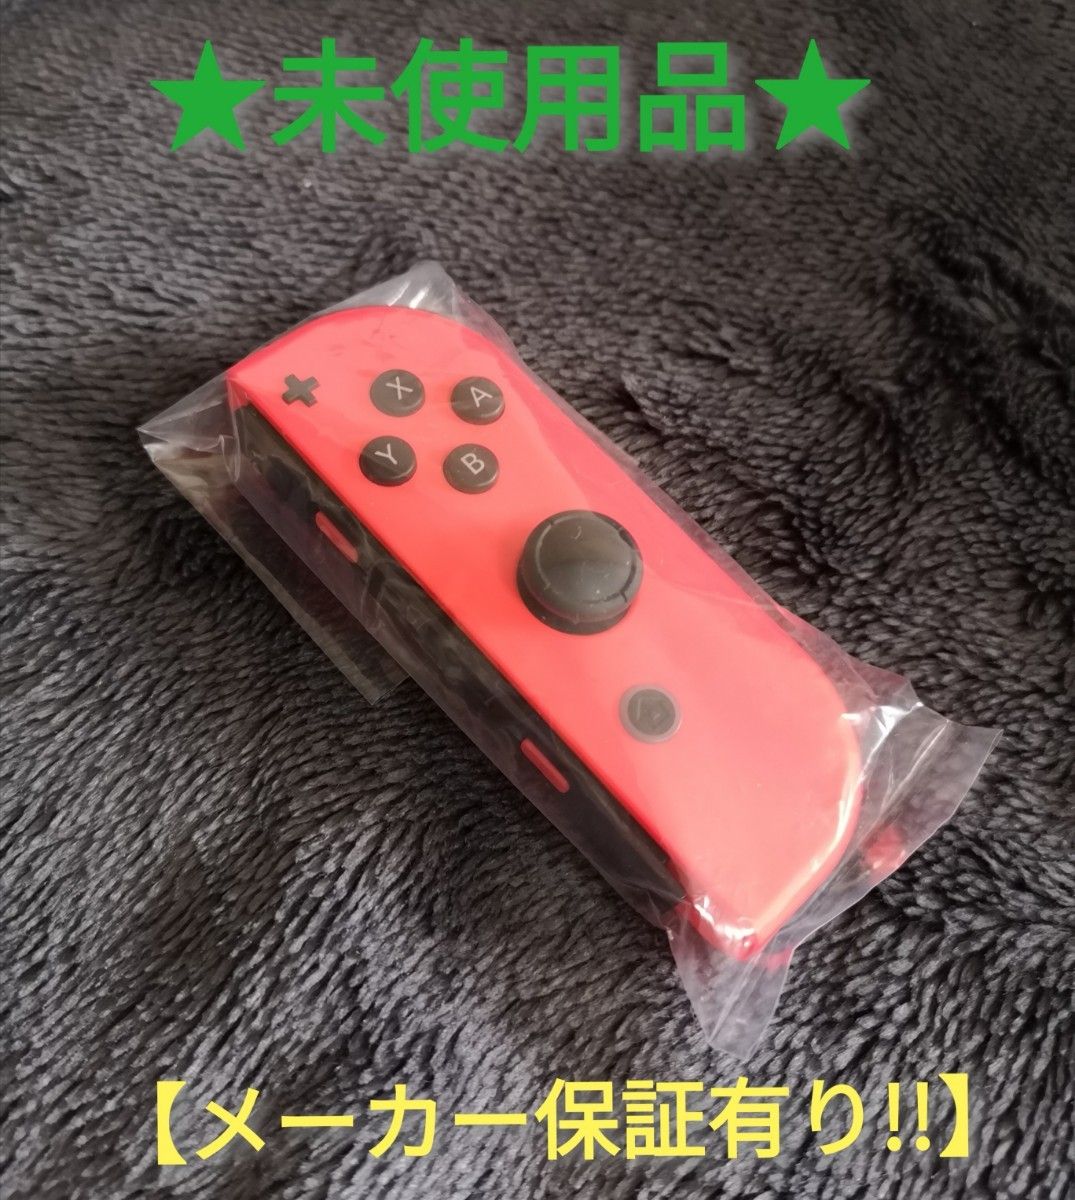 ジョイコン 右 (BR-88) 未使用品 【1週間保証有り!!】 Nintendo Switch ネオンレッド